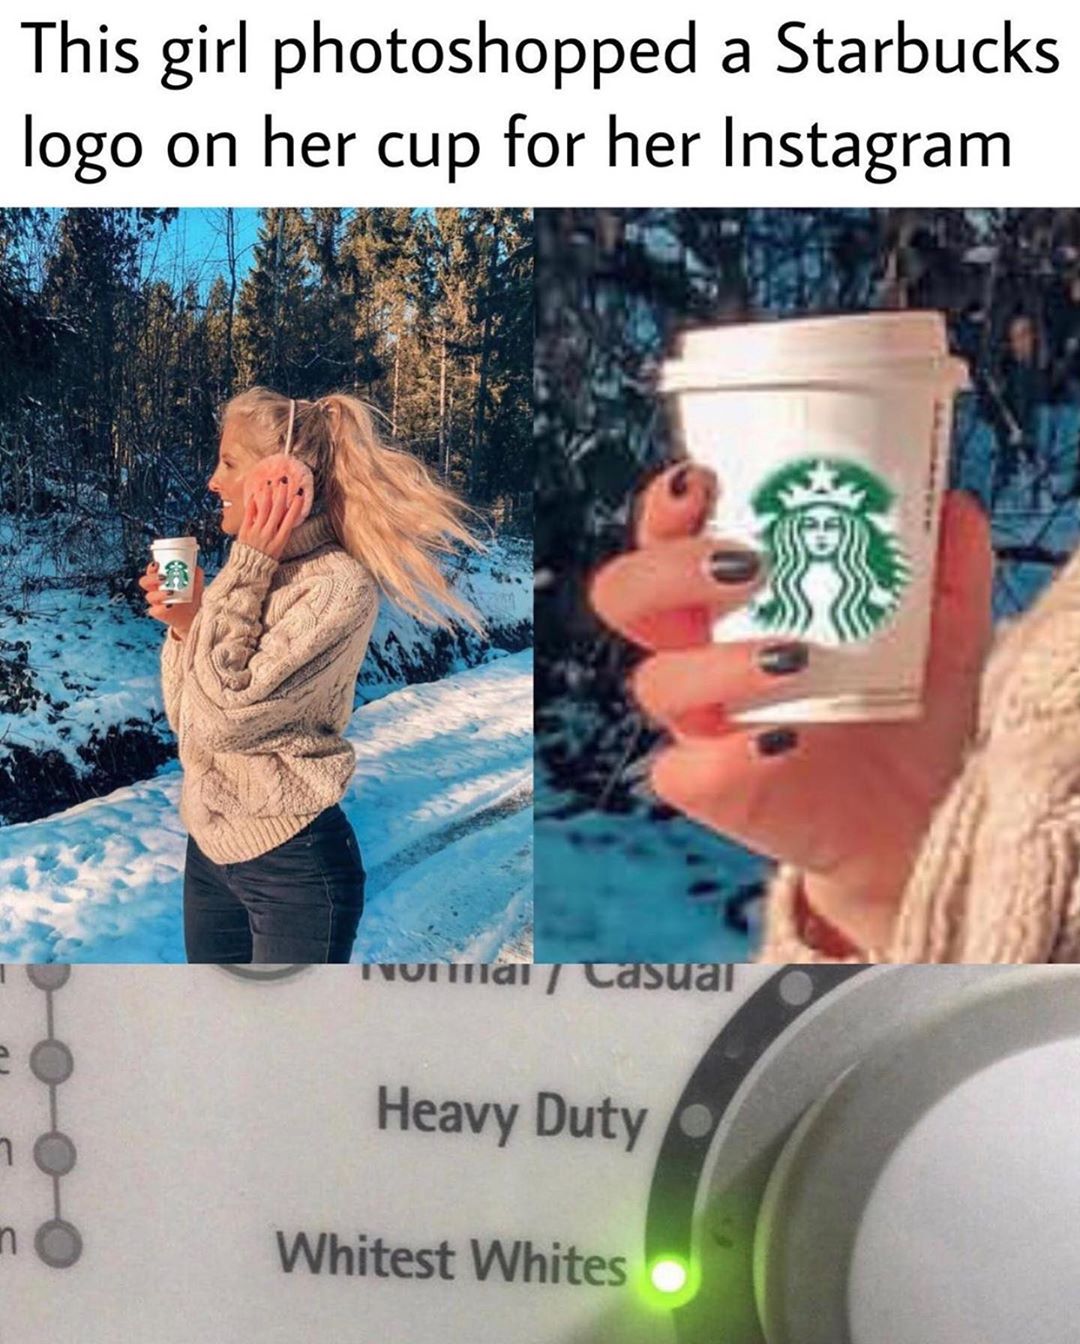 photoshopped images of starbucks - This girl photoshopped a Starbucks logo on her cup for her Instagram VUIiai Casuai Heavy Duty Whitest Whites